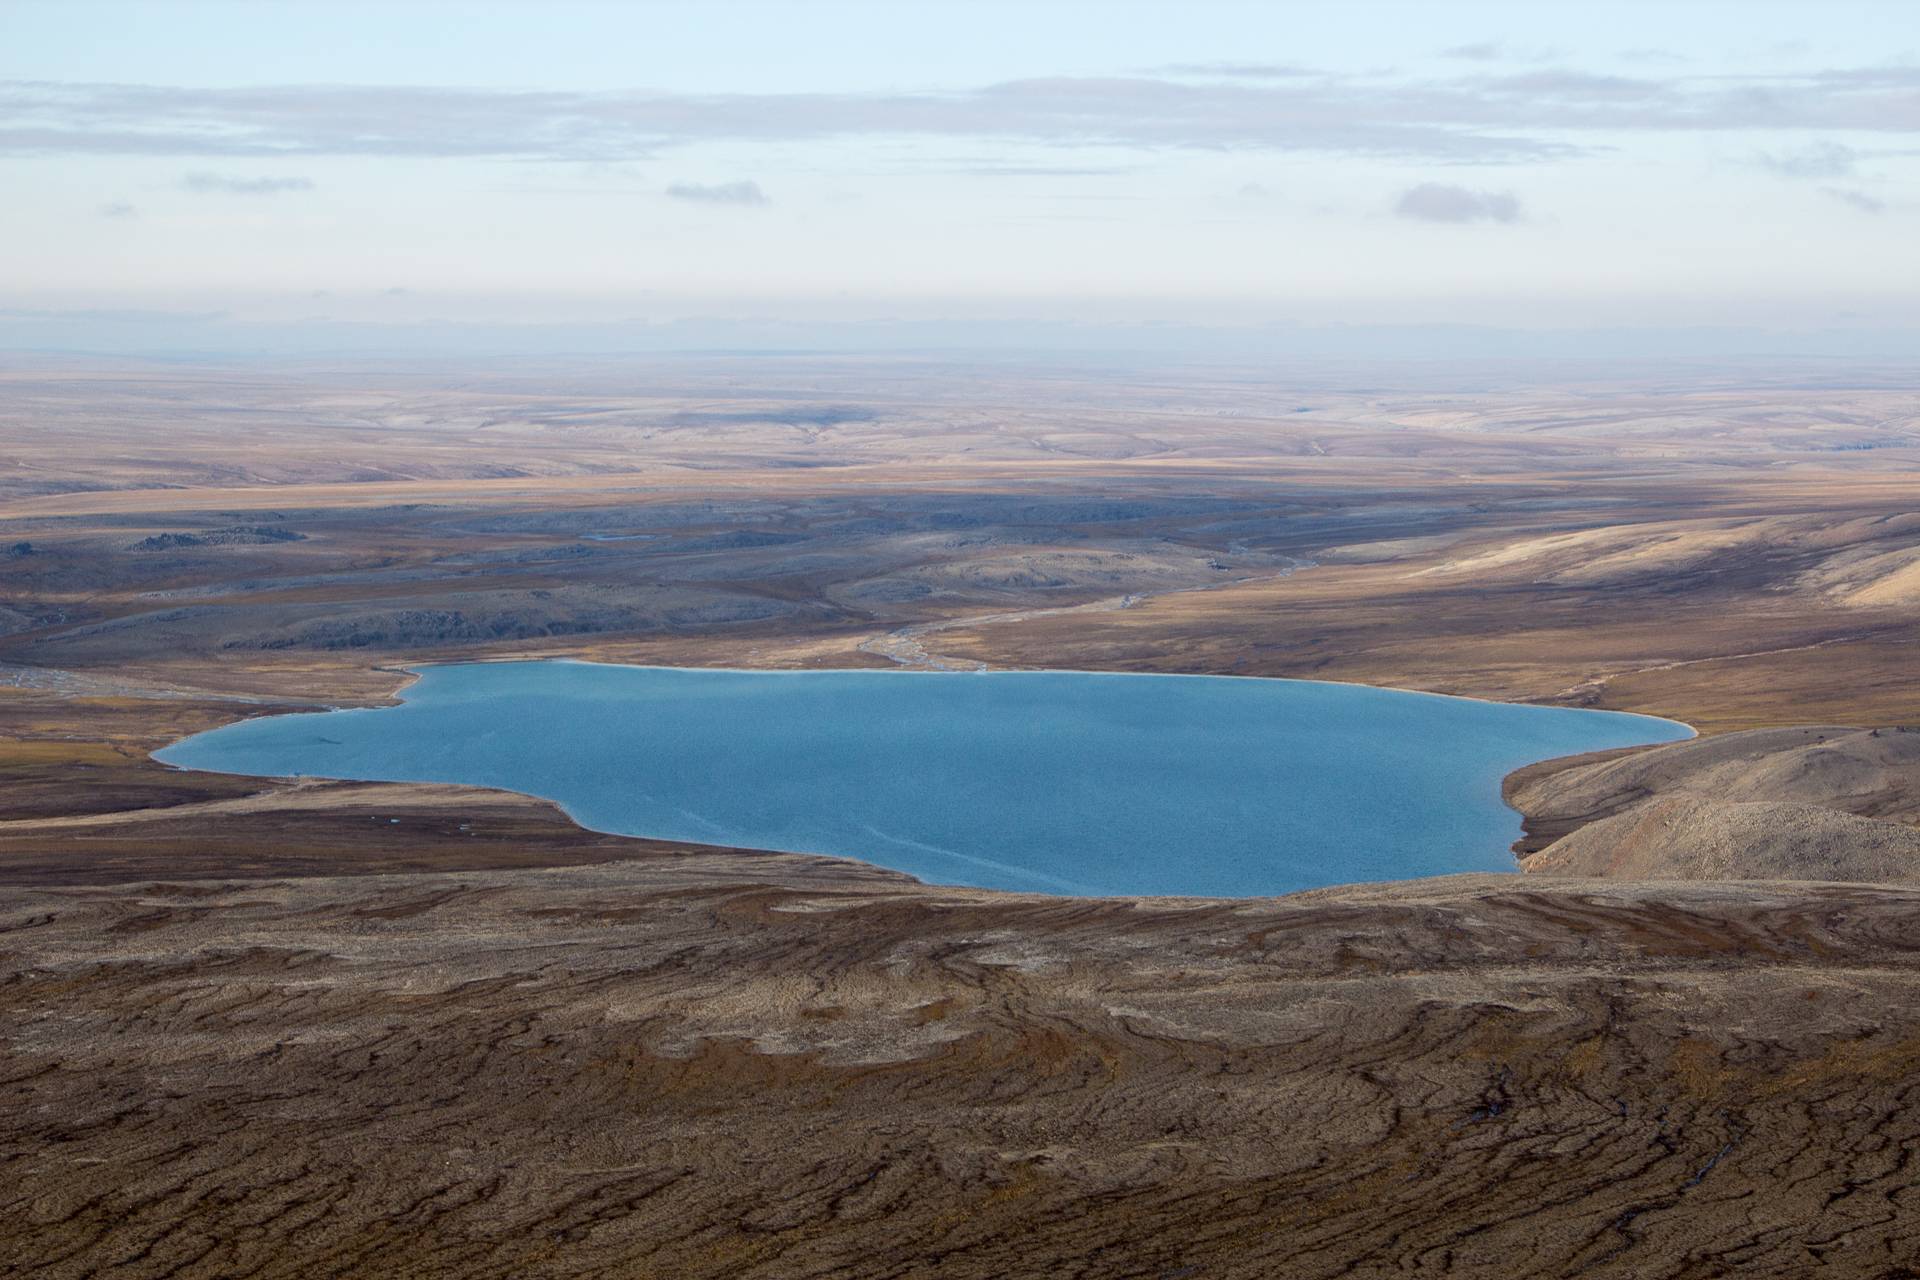 Озеро тургояк – «уральский байкал». остров веры — ураловед